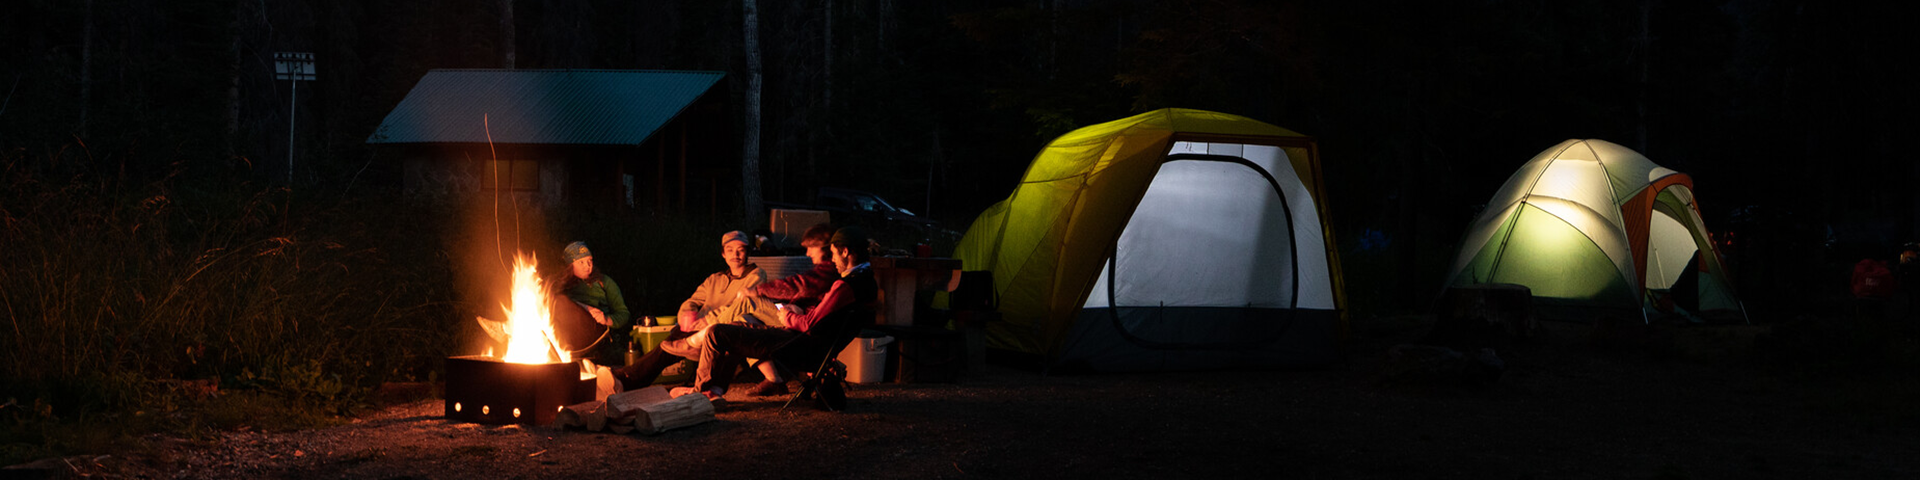 Quatre personnes devant un feu dans un camping